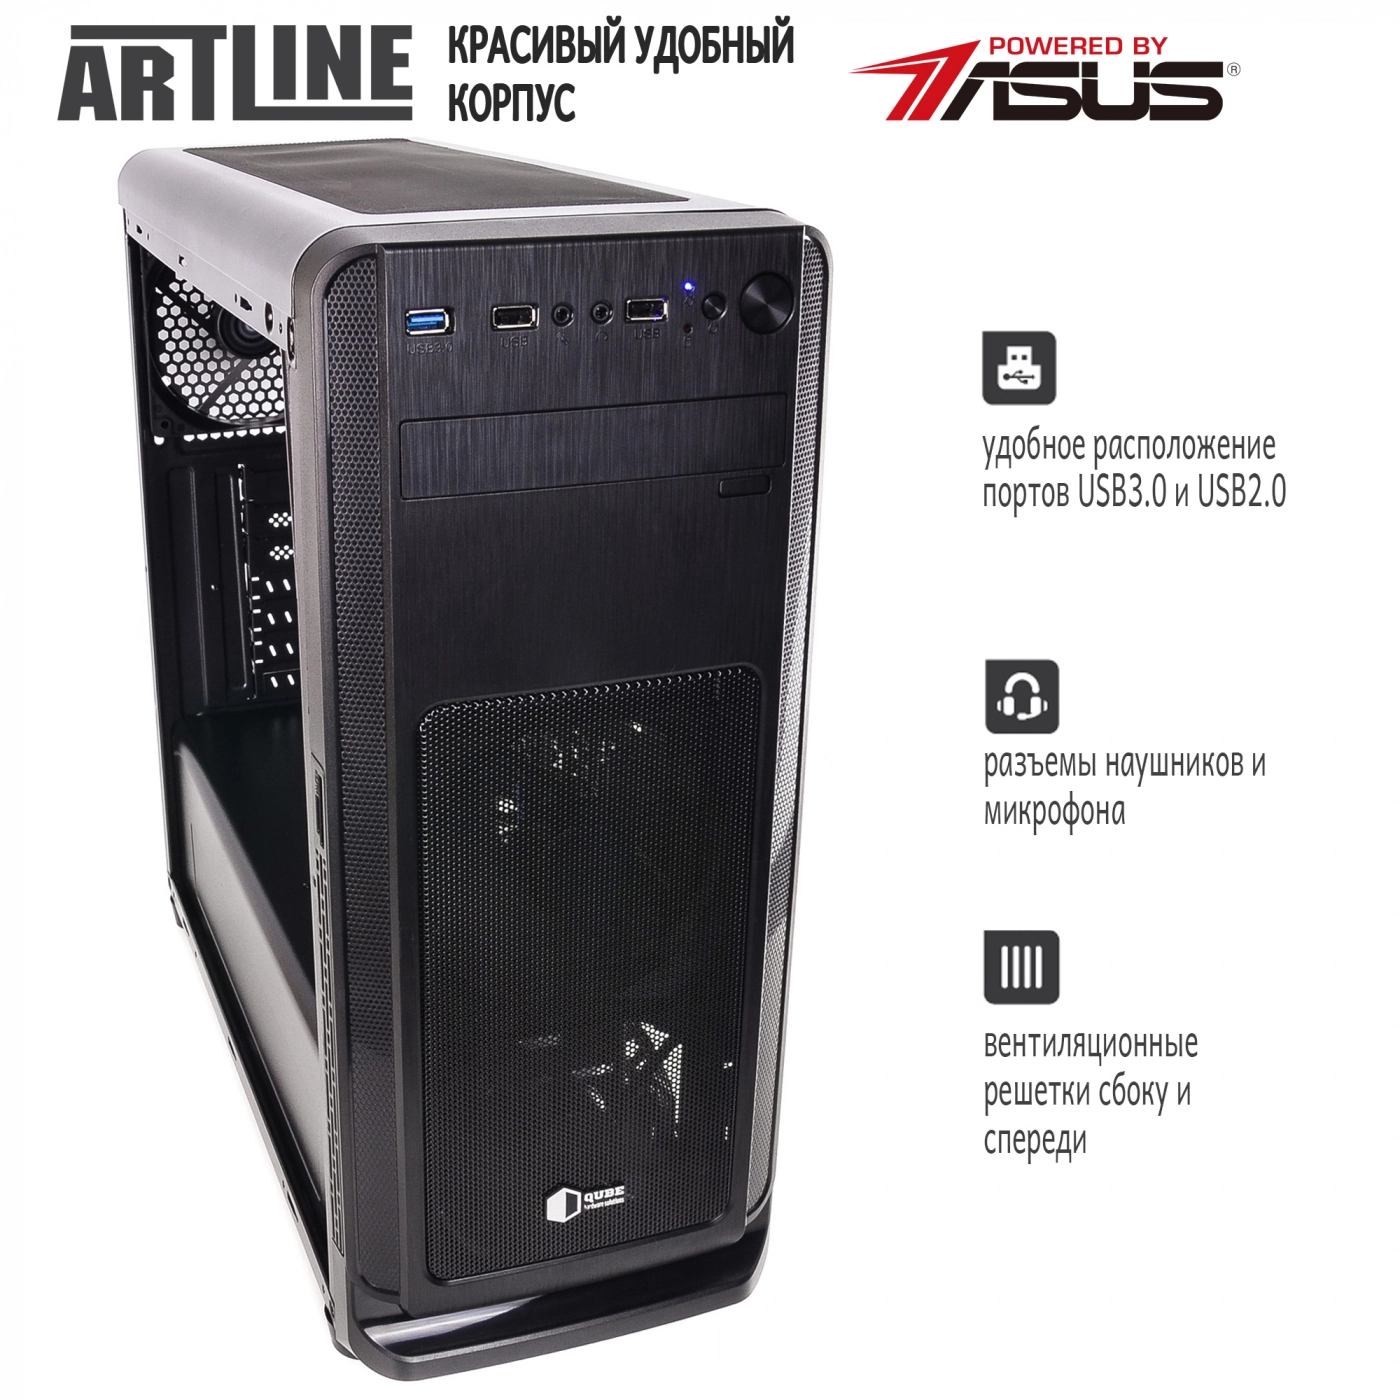 Купить Сервер ARTLINE Business T27v12 - фото 4